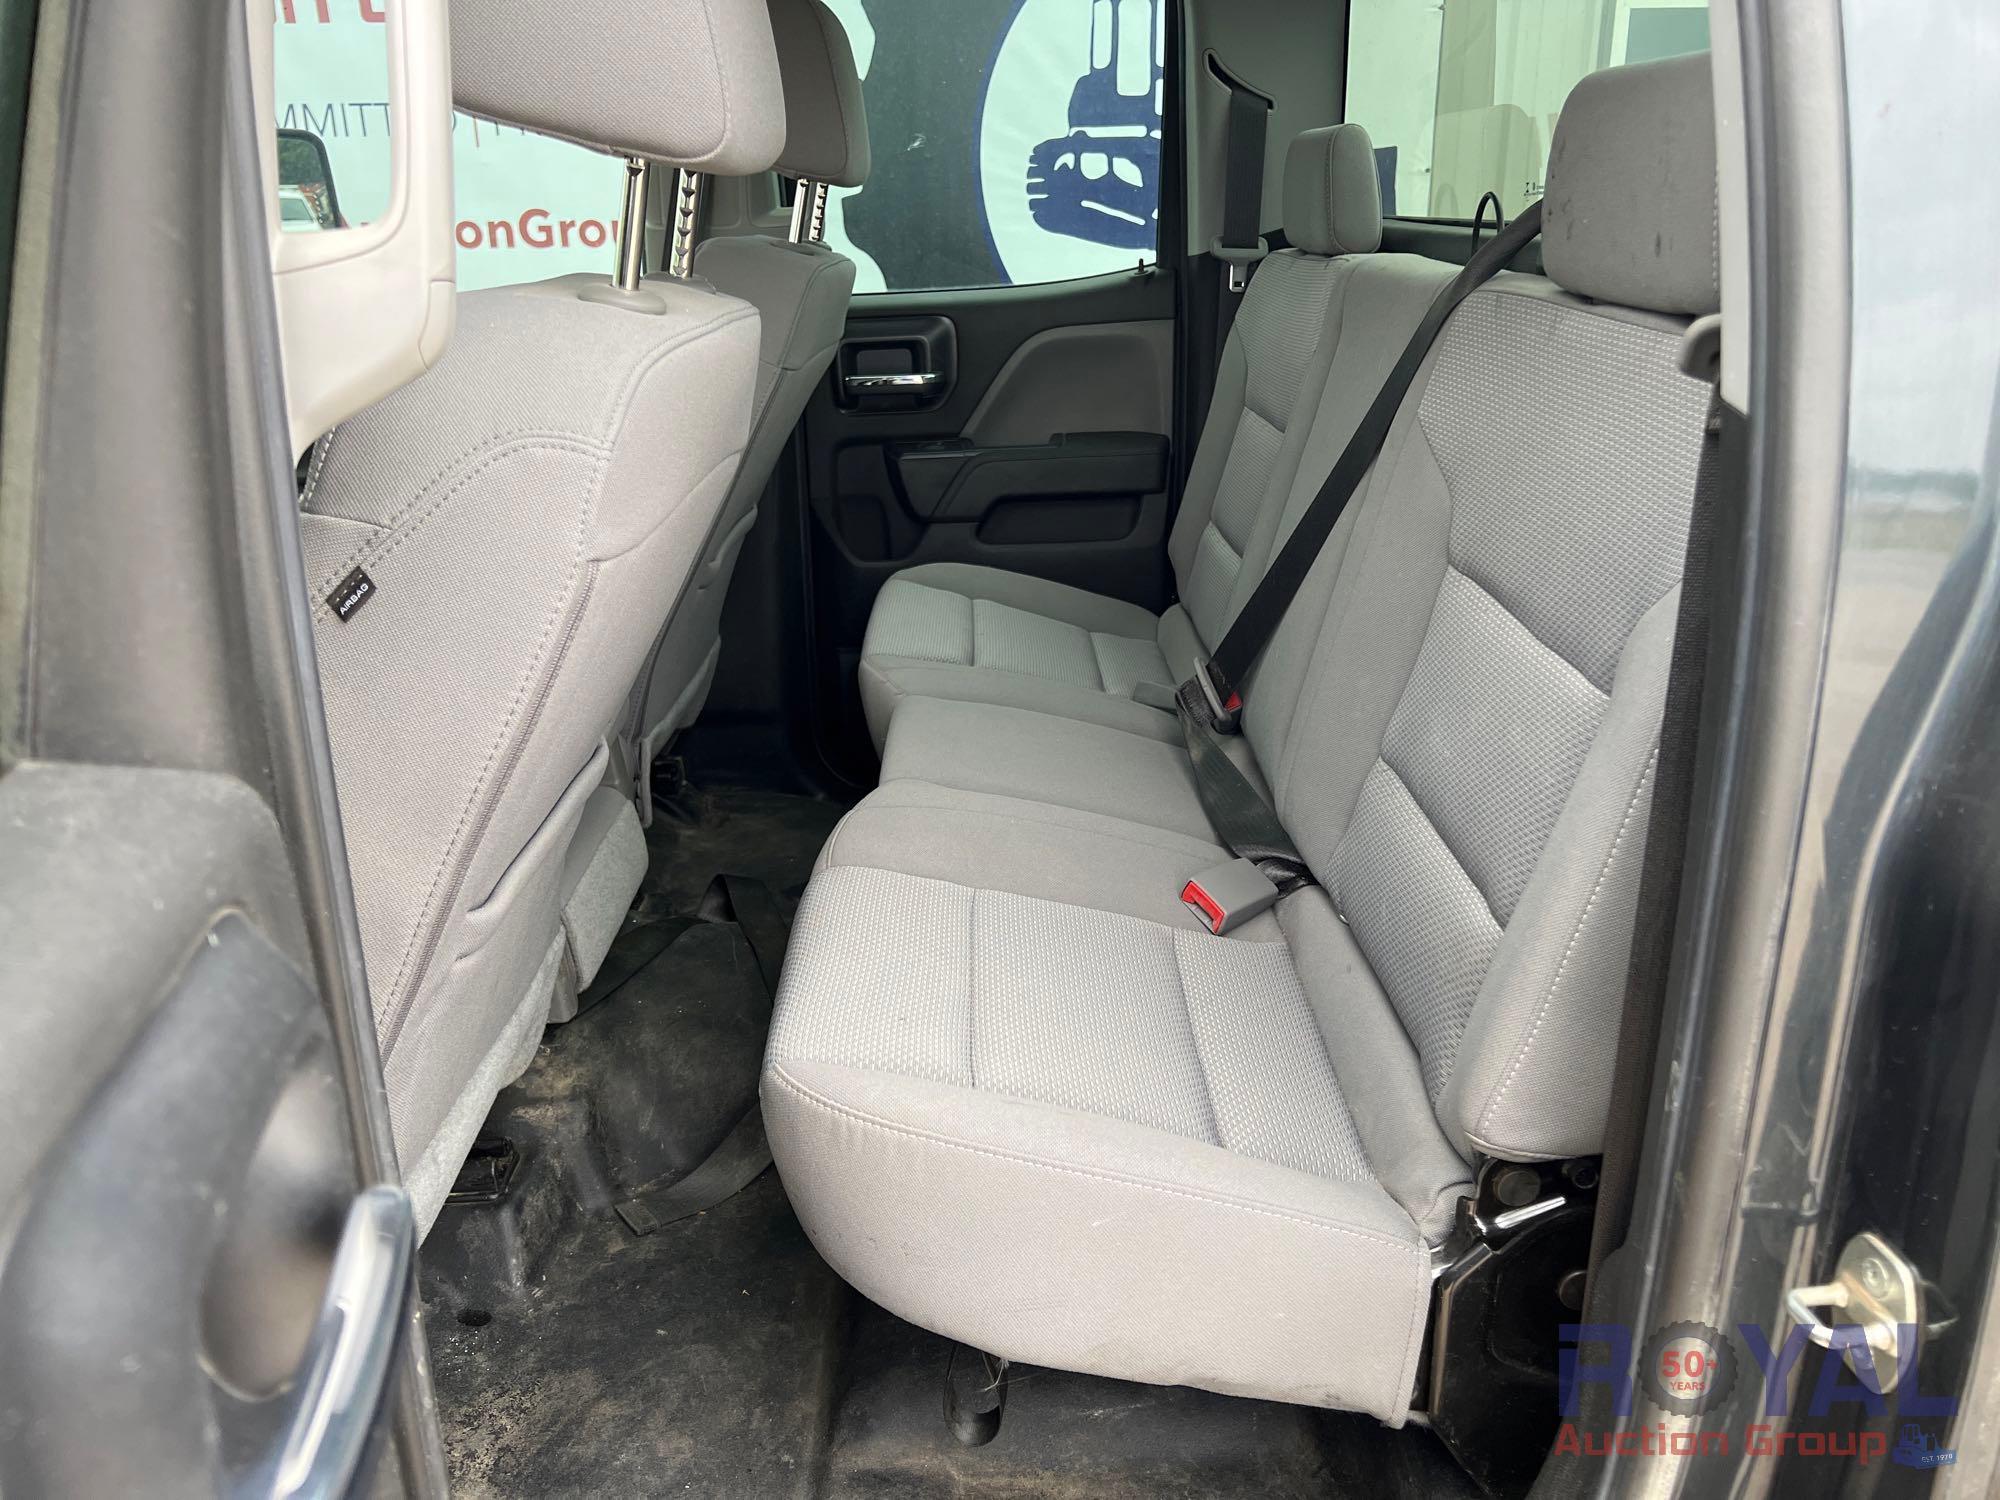 2018 Chevrolet Silverado 4x4 Double Cab Pickup Truck